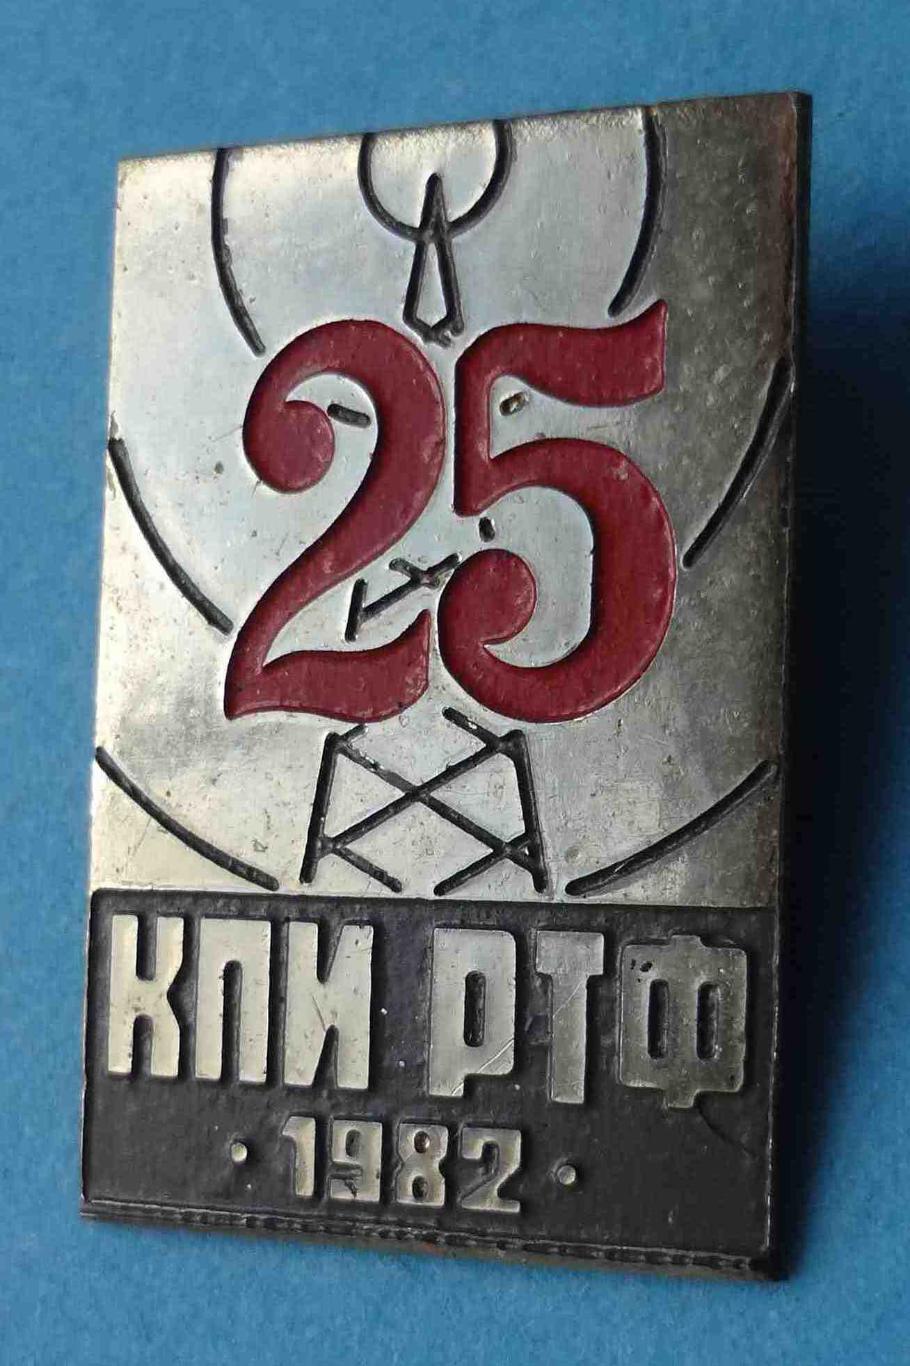 25 лет КПИ РТФ 1982 Киевский политехнический институт Радиотехнический факультет